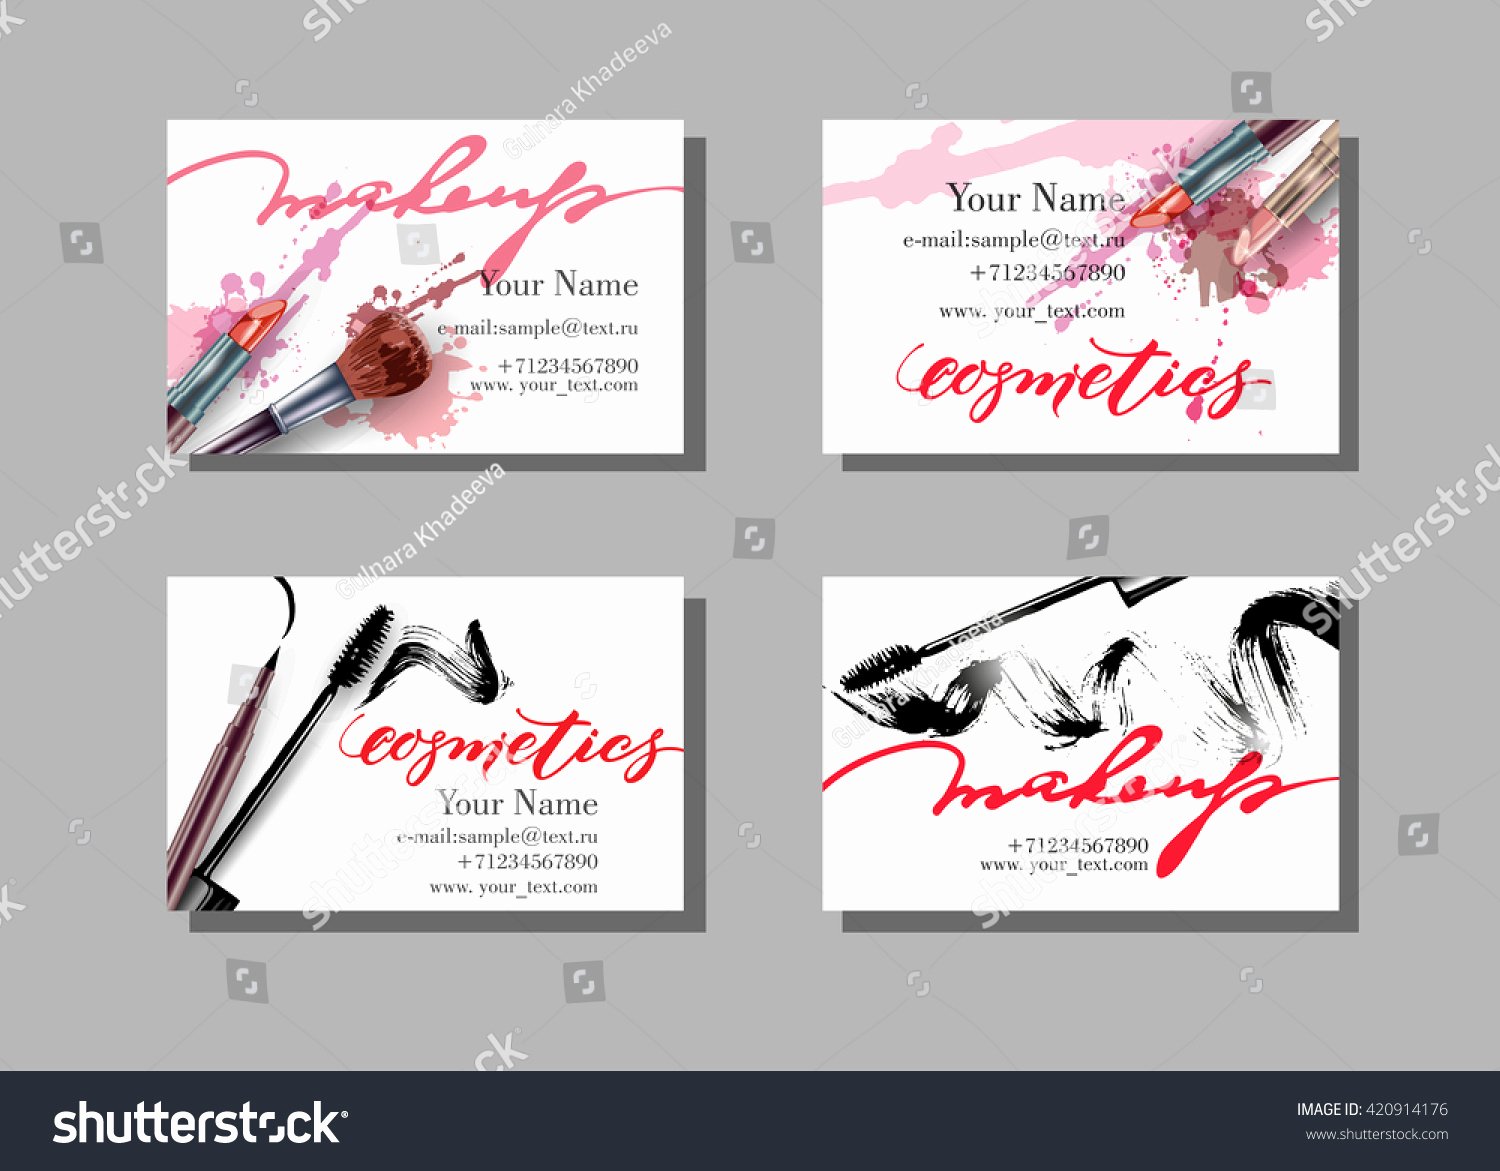 Makeup Artist Business Card Vector Template Stock Vector